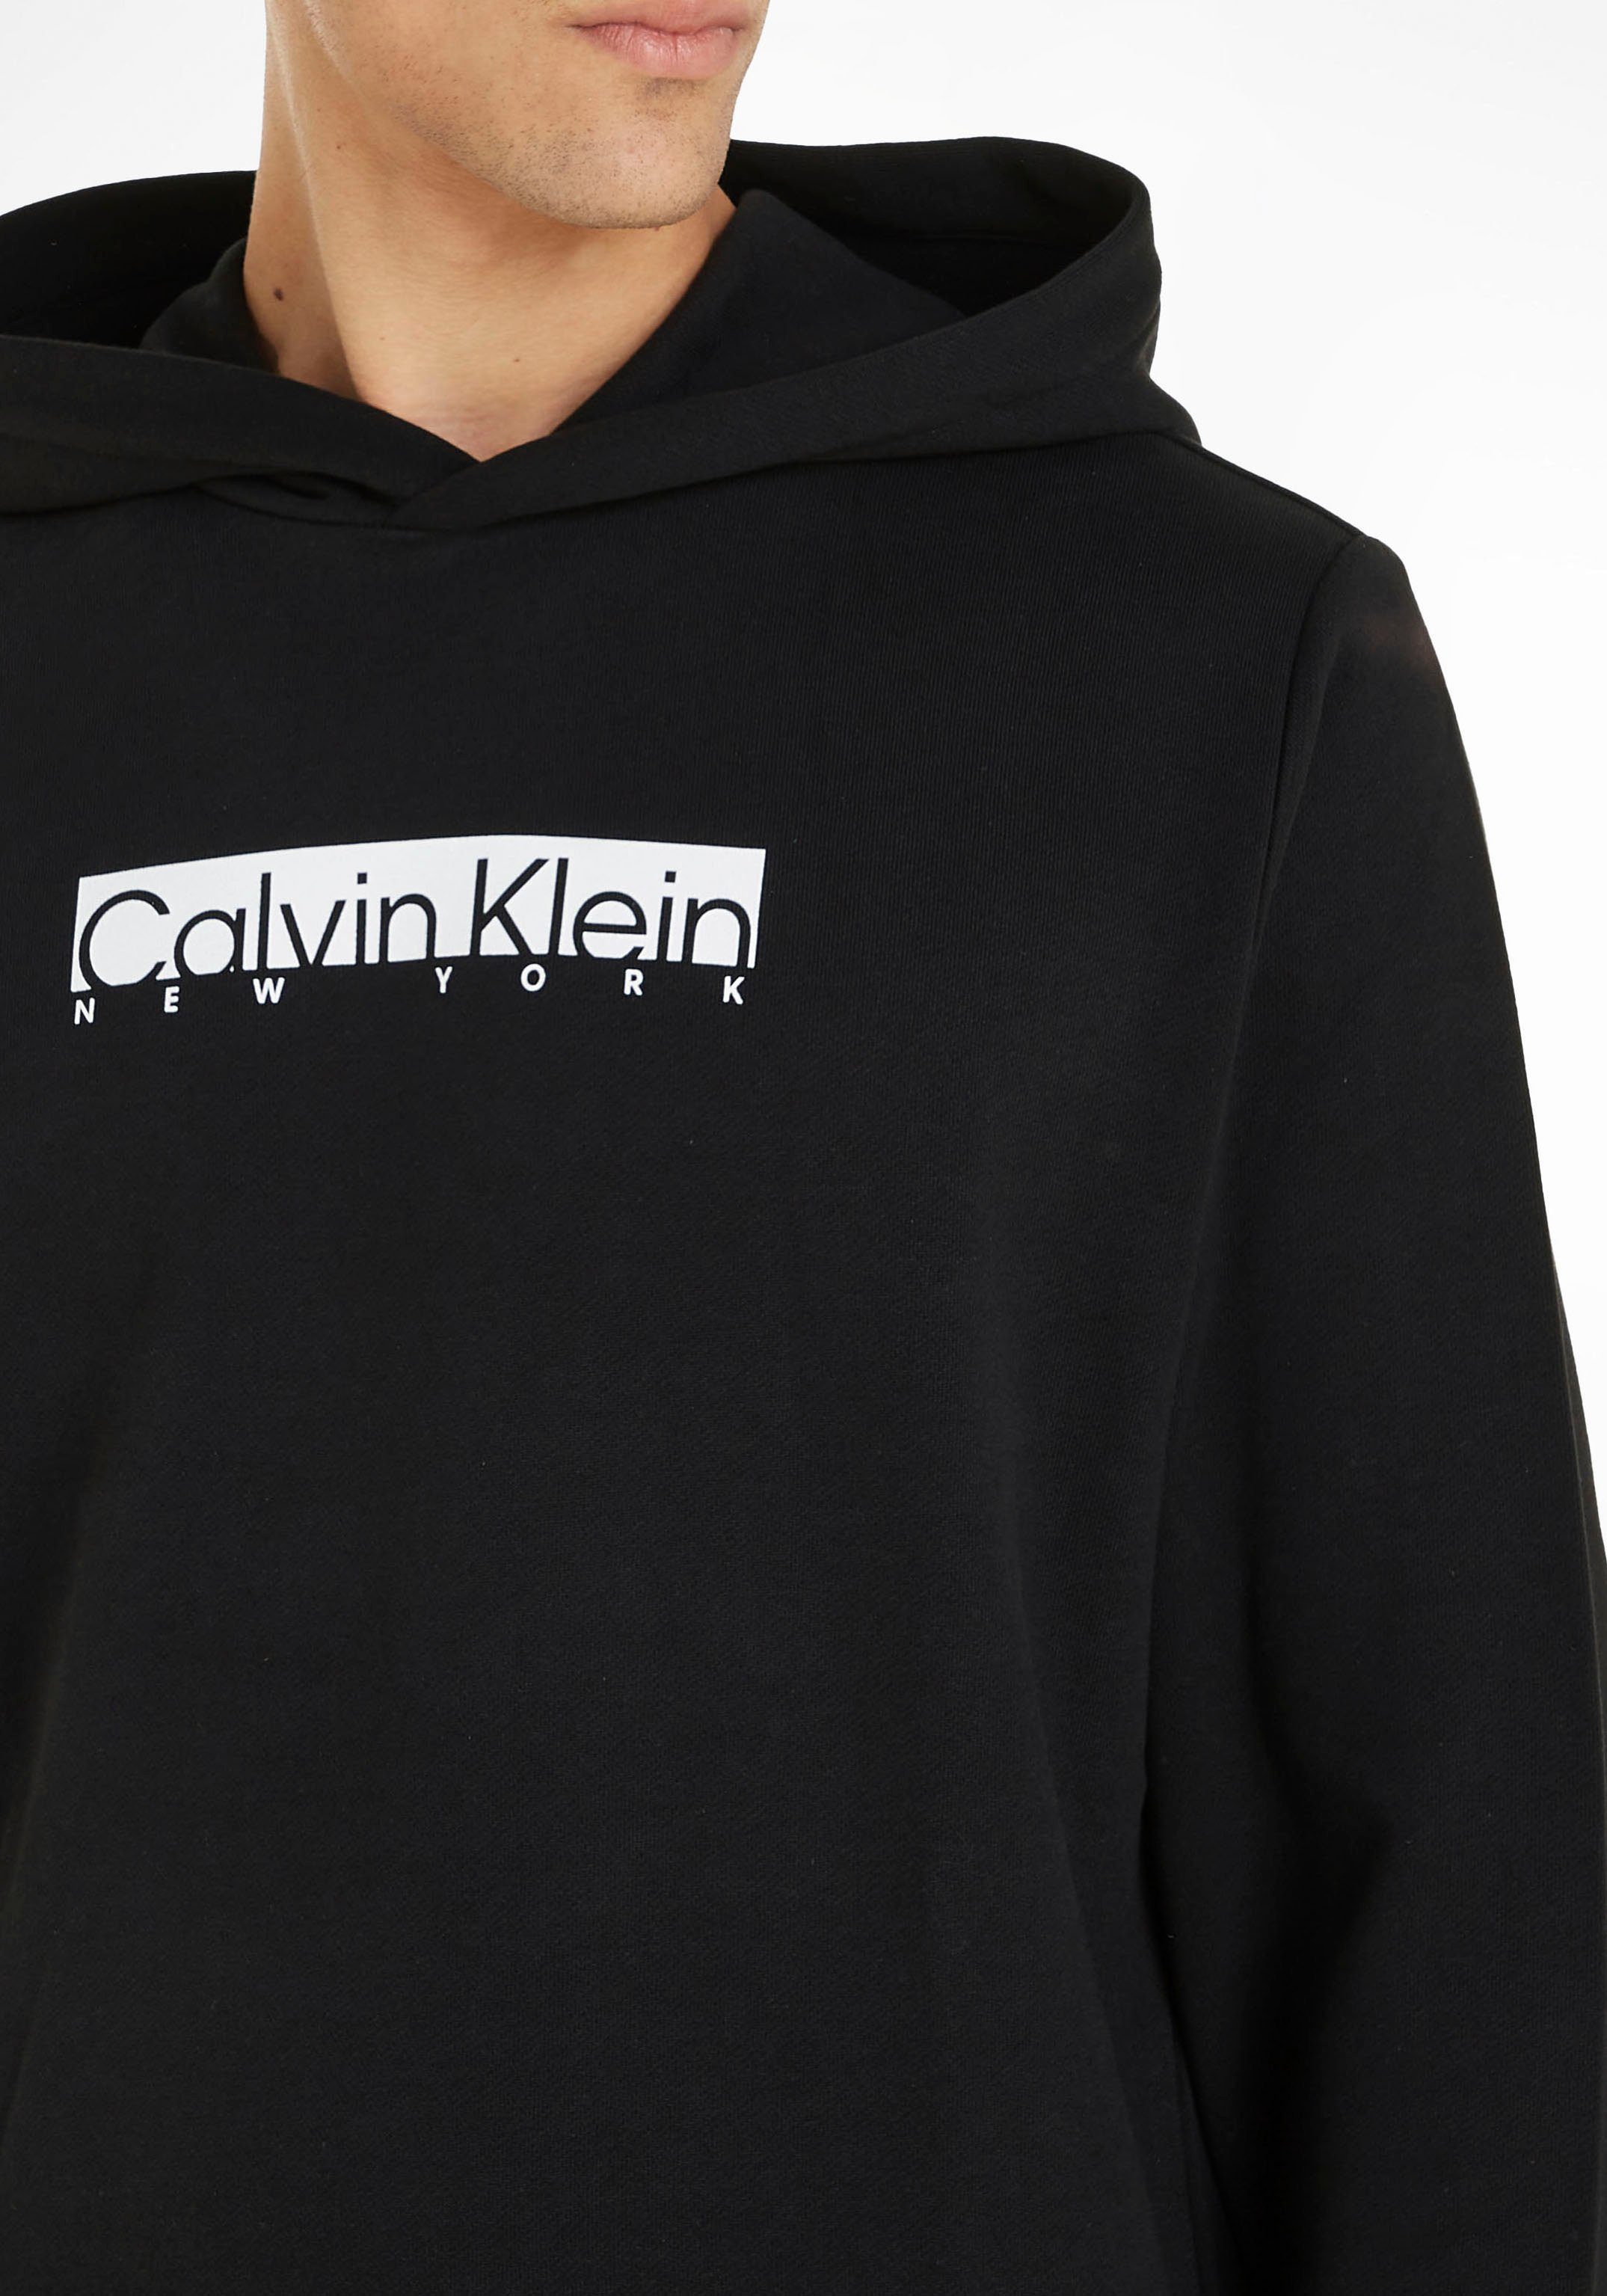 Print CK New Klein Calvin York schwarz Kapuzensweatshirt mit